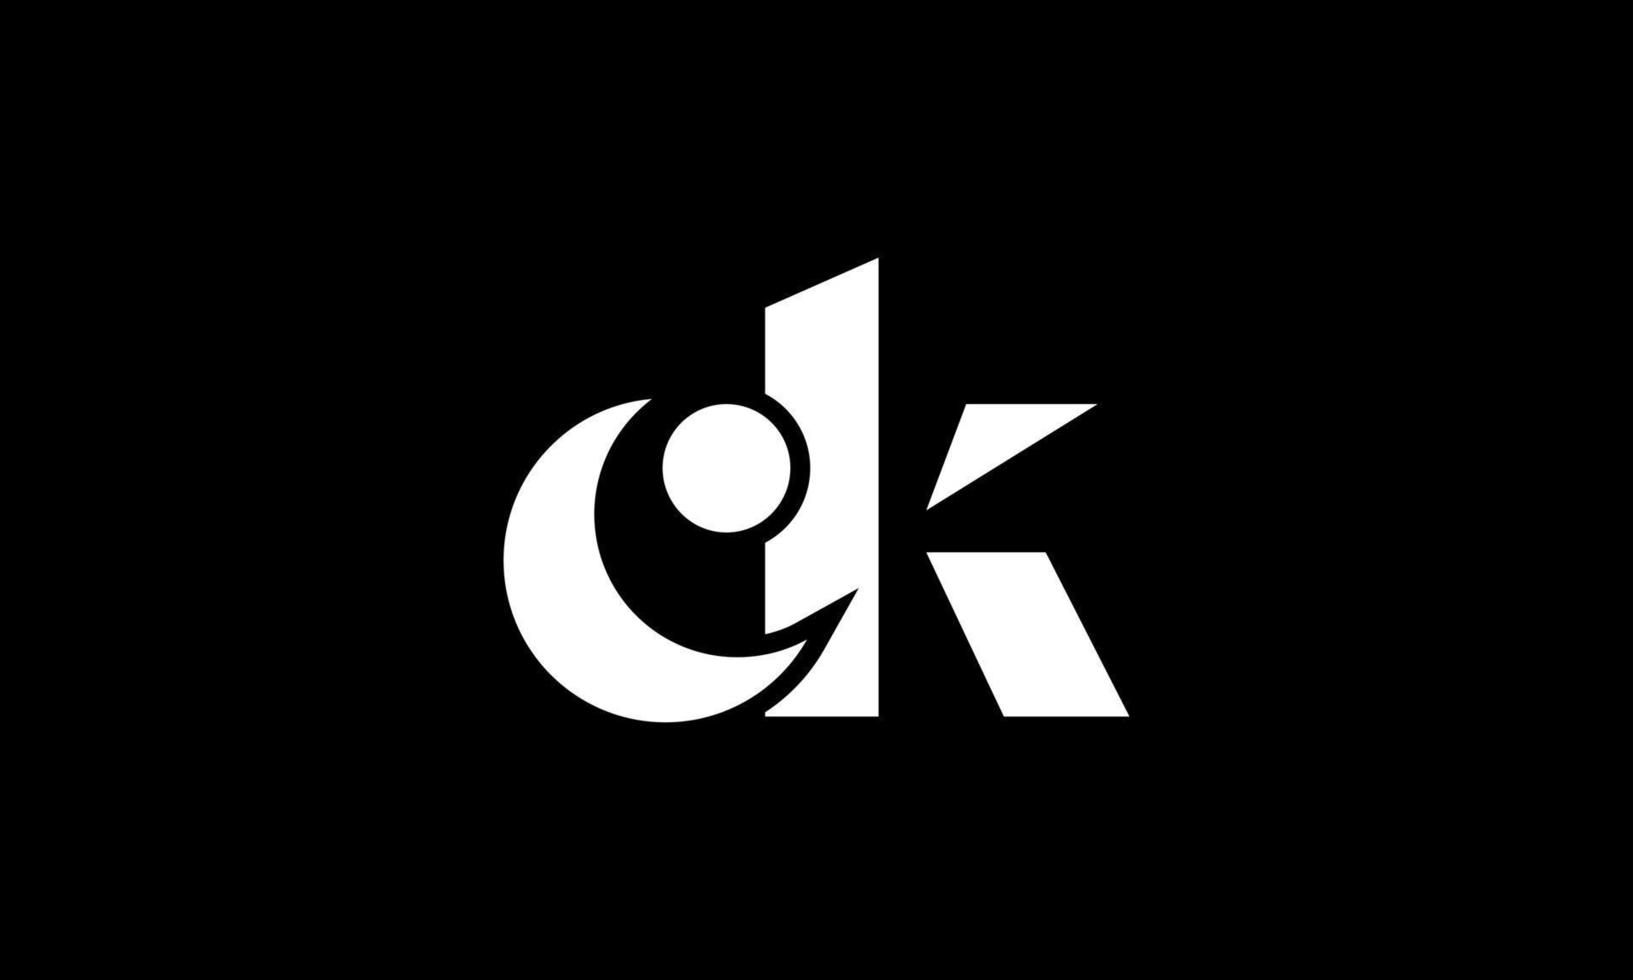 eerste brief ck logo ontwerp in zwart achtergrond. pro vector. vector